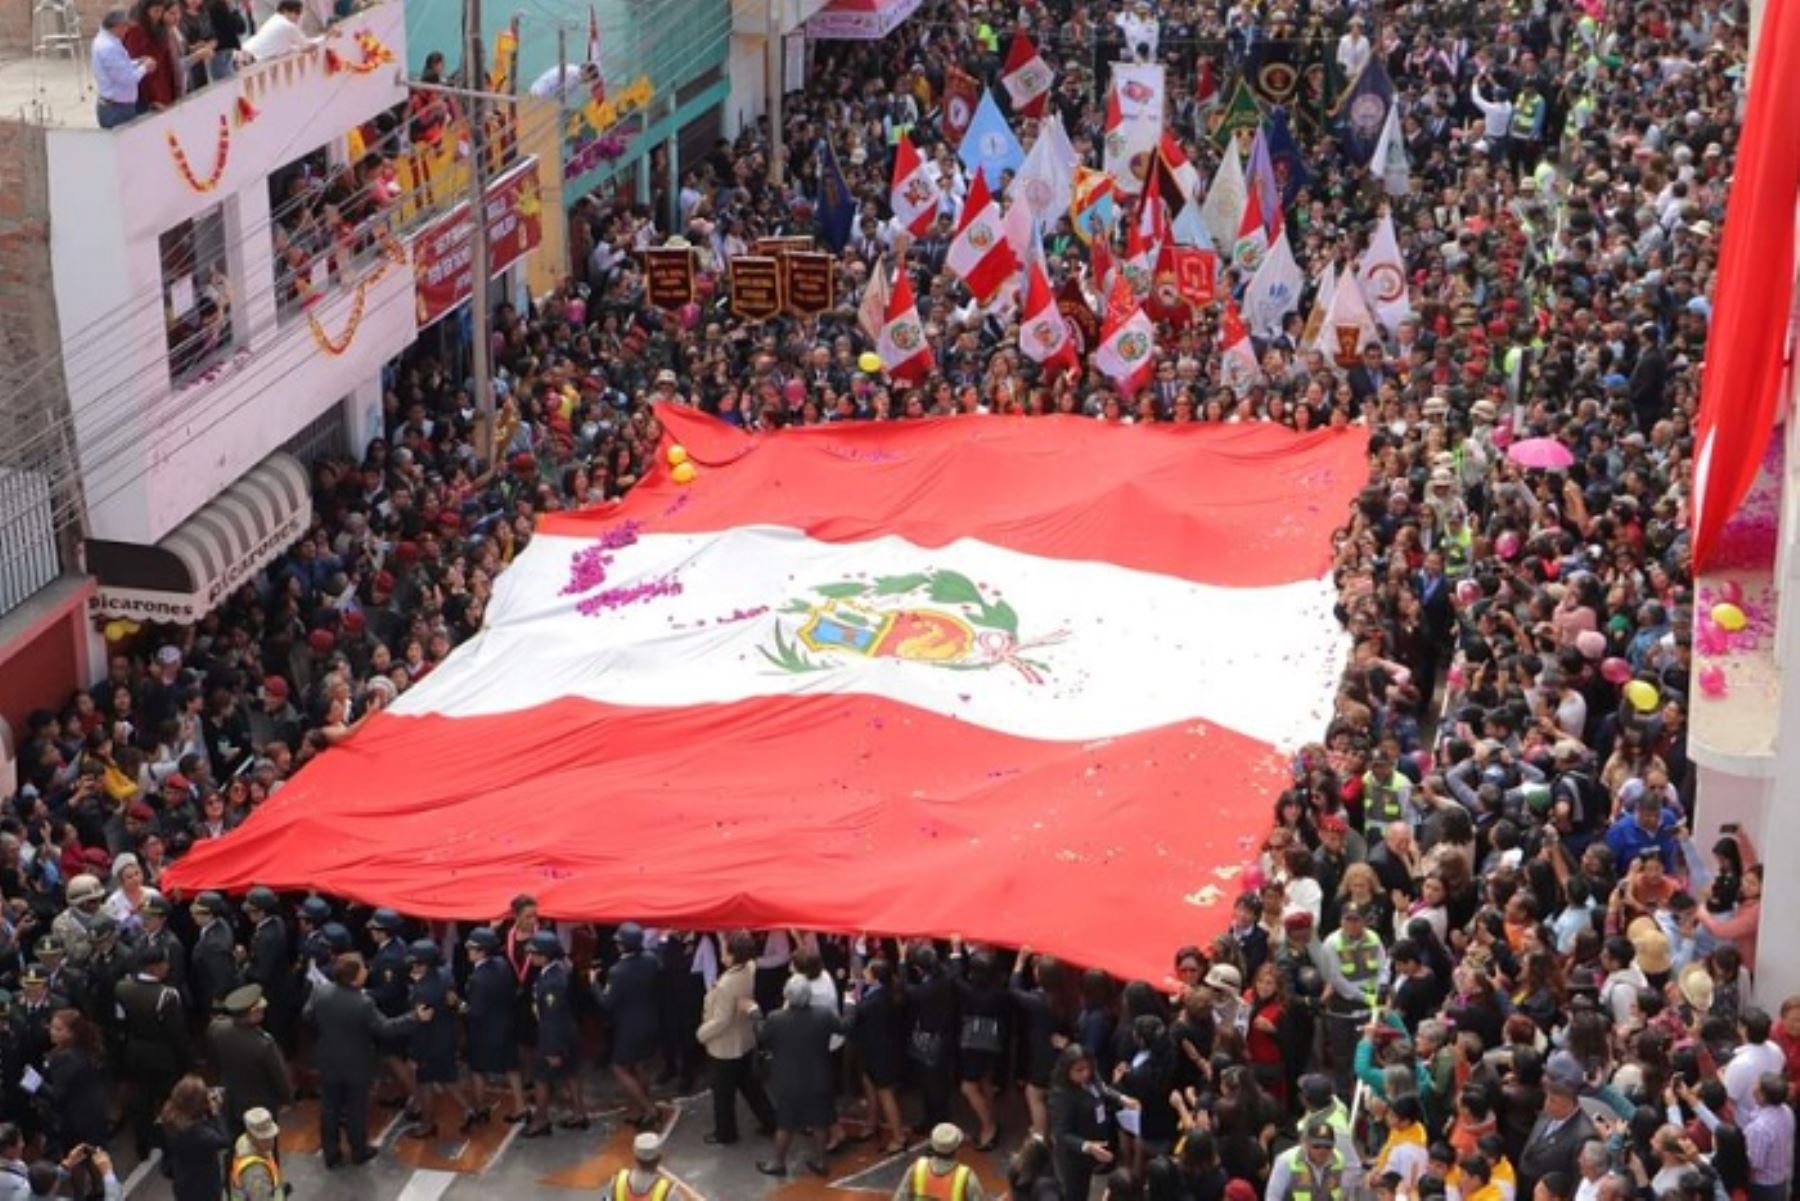 La mayoría de ciudadanos, desde sus balcones, arrojaban pétalos de rosas mientras gritaban voz en cuello:  ¡Viva Tacna! ¡Viva el Perú! ¡Viva la Patria!.